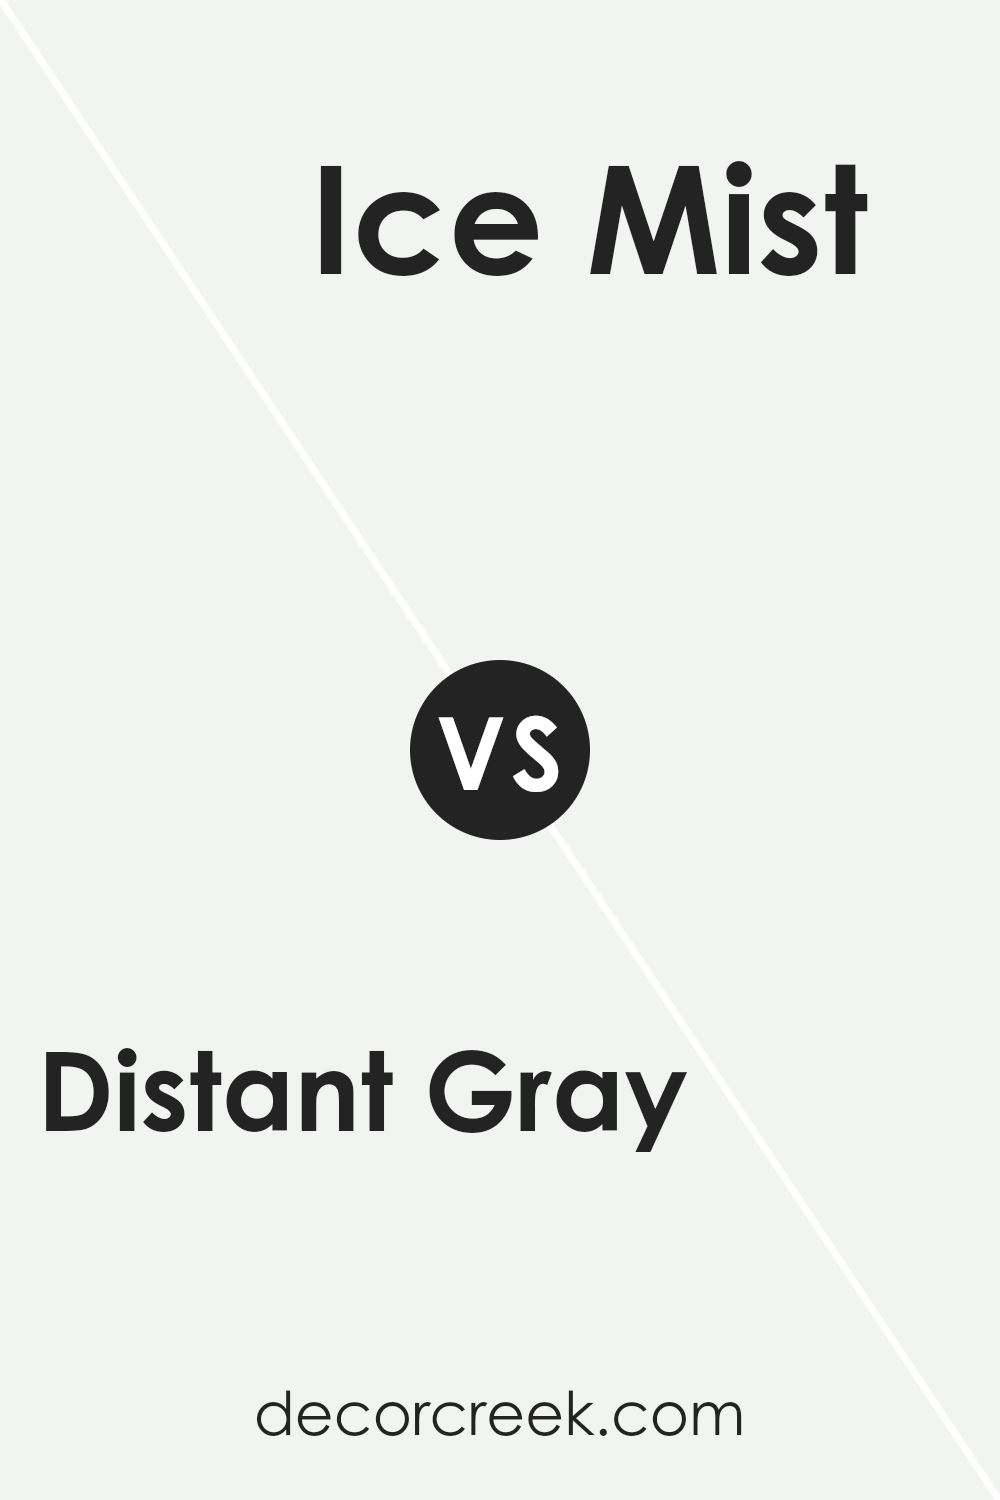 distant_gray_oc_68_vs_ice_mist_oc_67